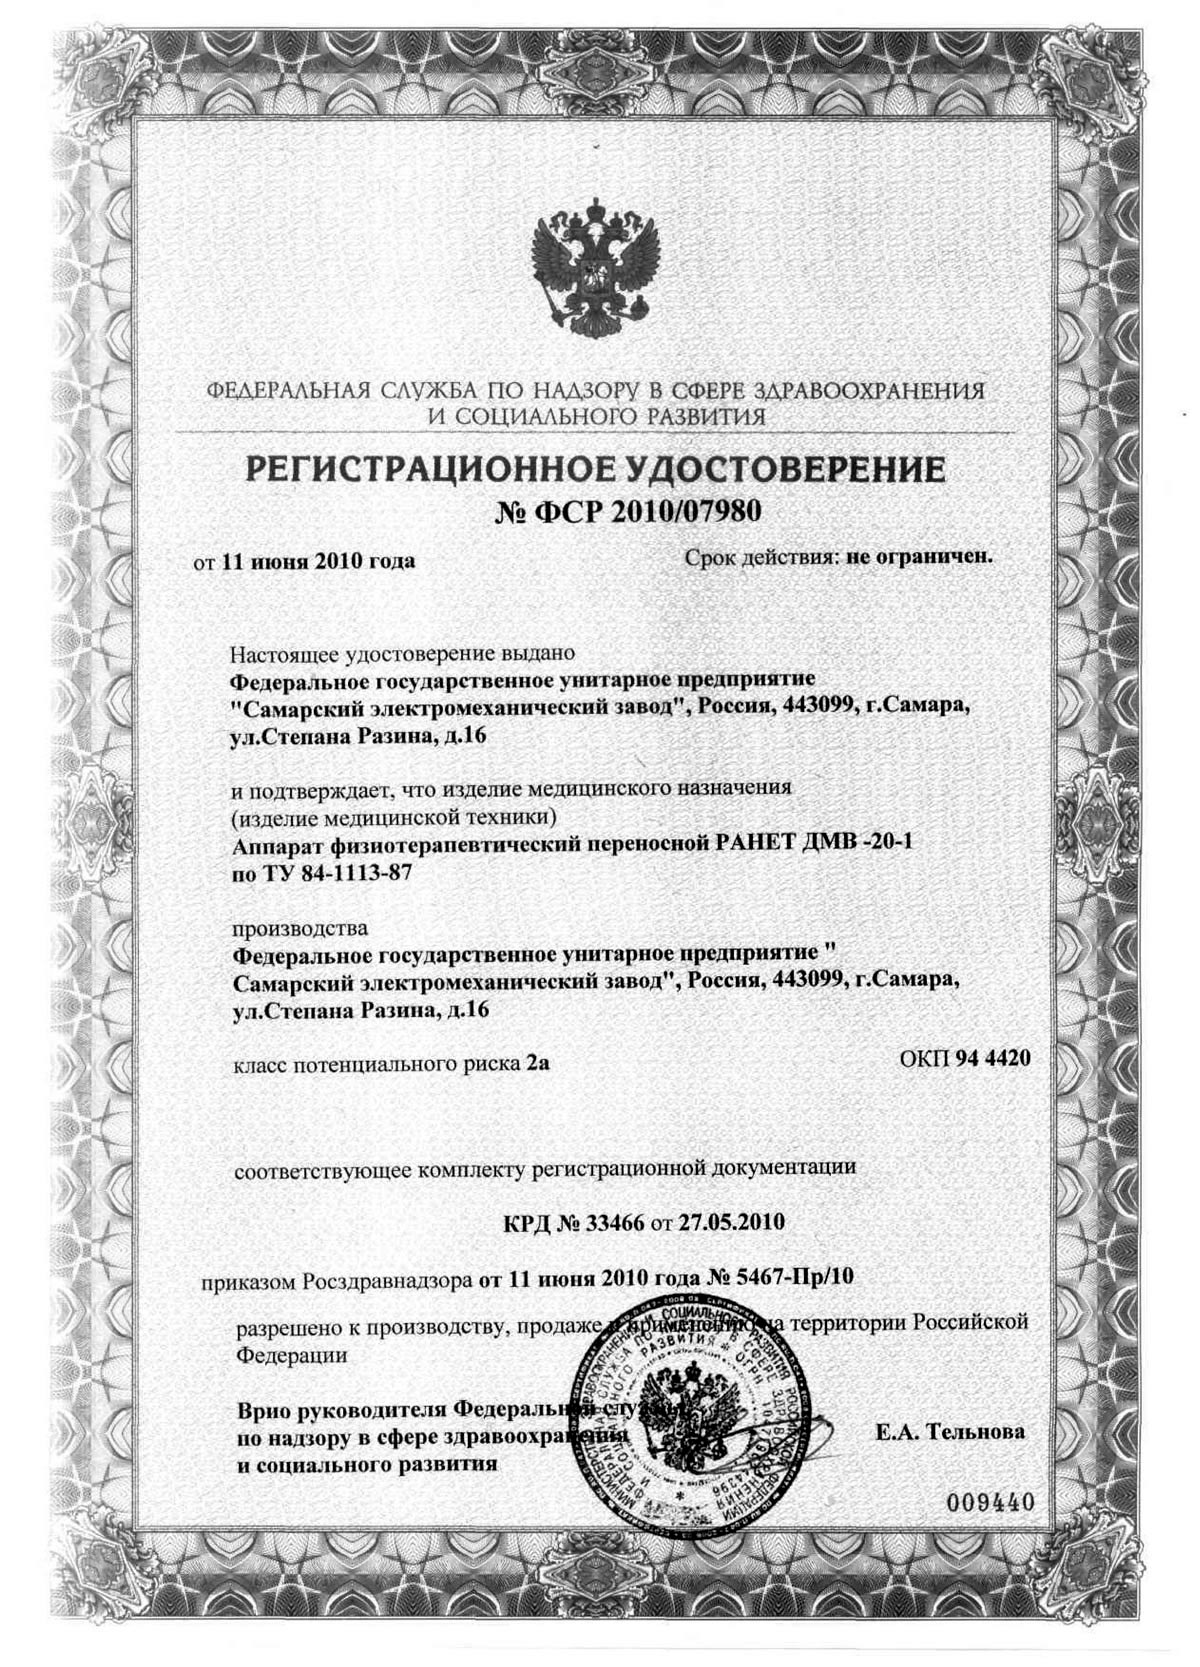 сертификат РАНЕТ ДМВ-20-1 - аппарат физиотерапевтический